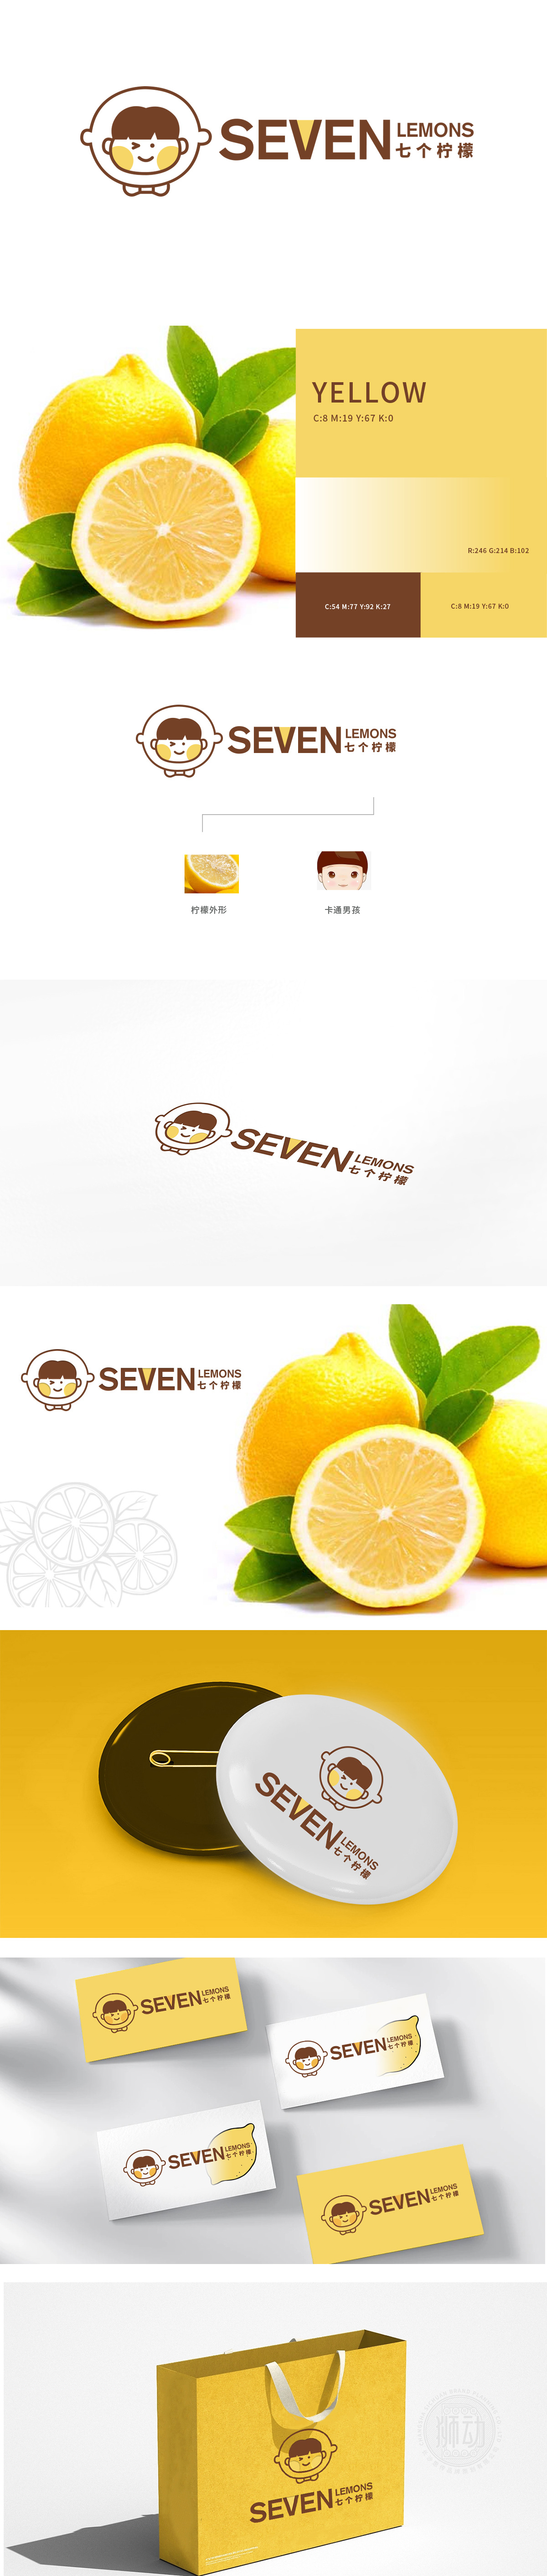 七个柠檬  	食品/饮品	吉祥物设计